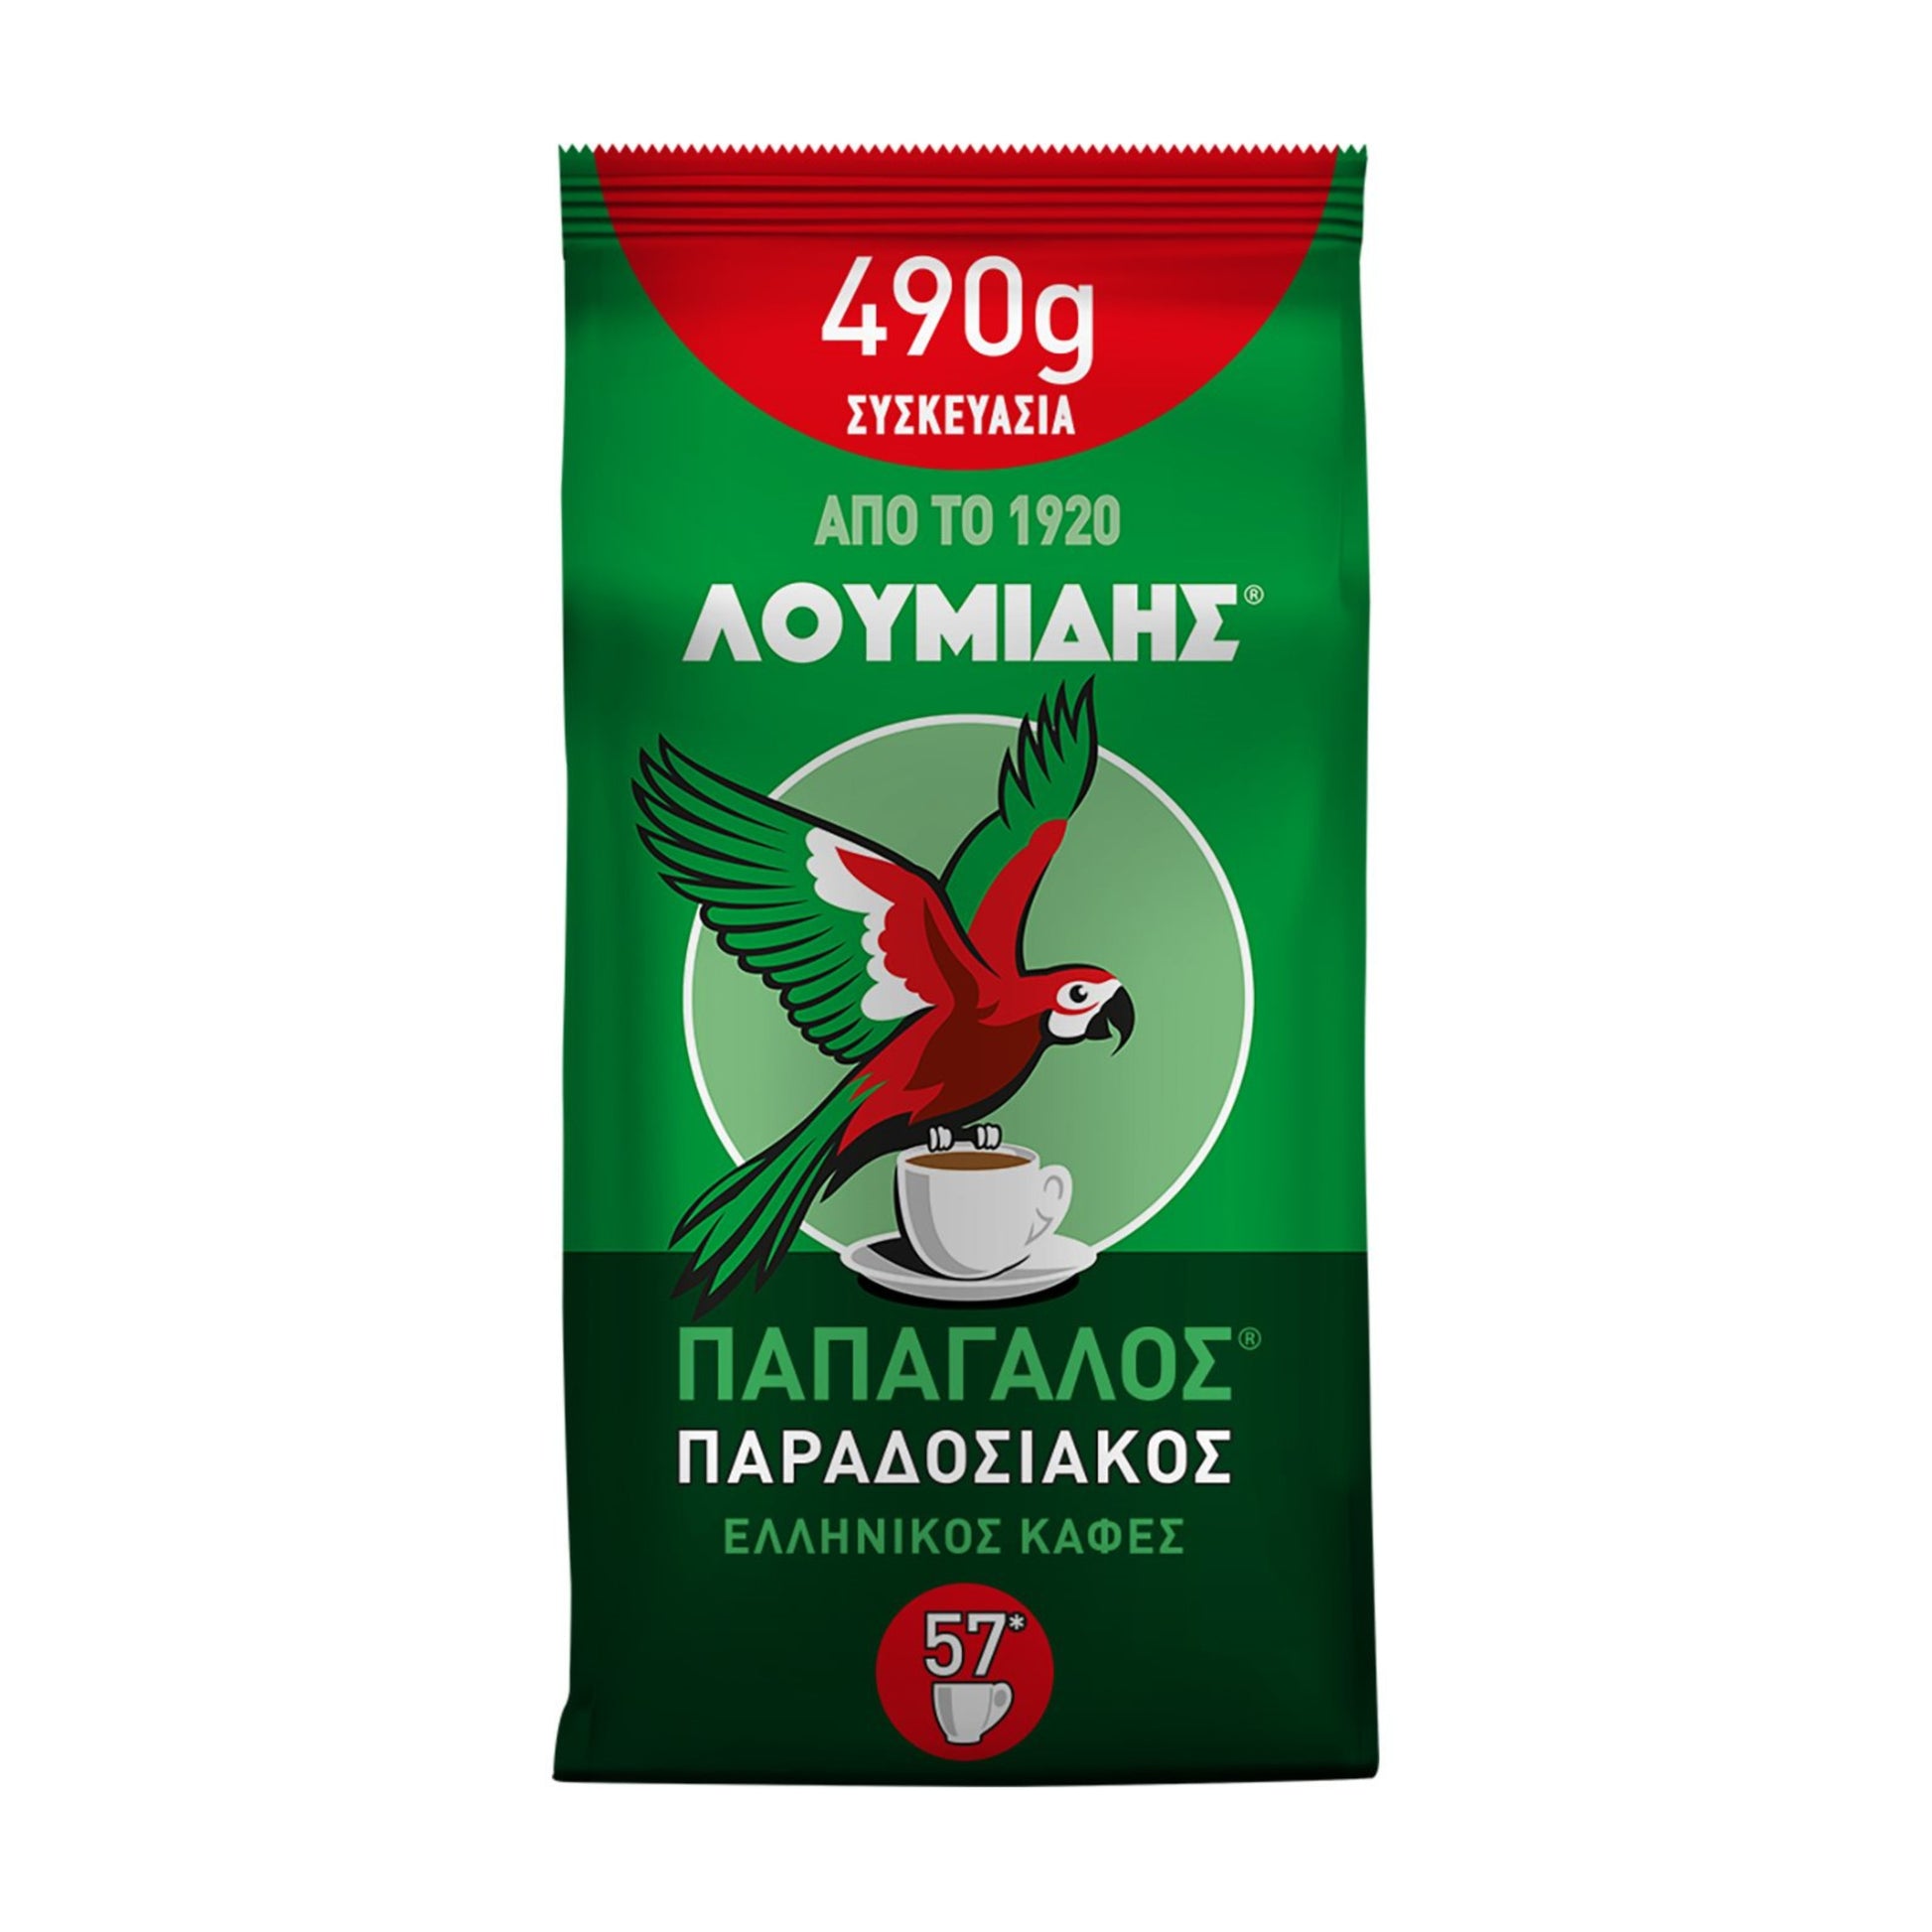 Prodotti-Greci-Caffé-greco-tradizionale-Loumidis-490g